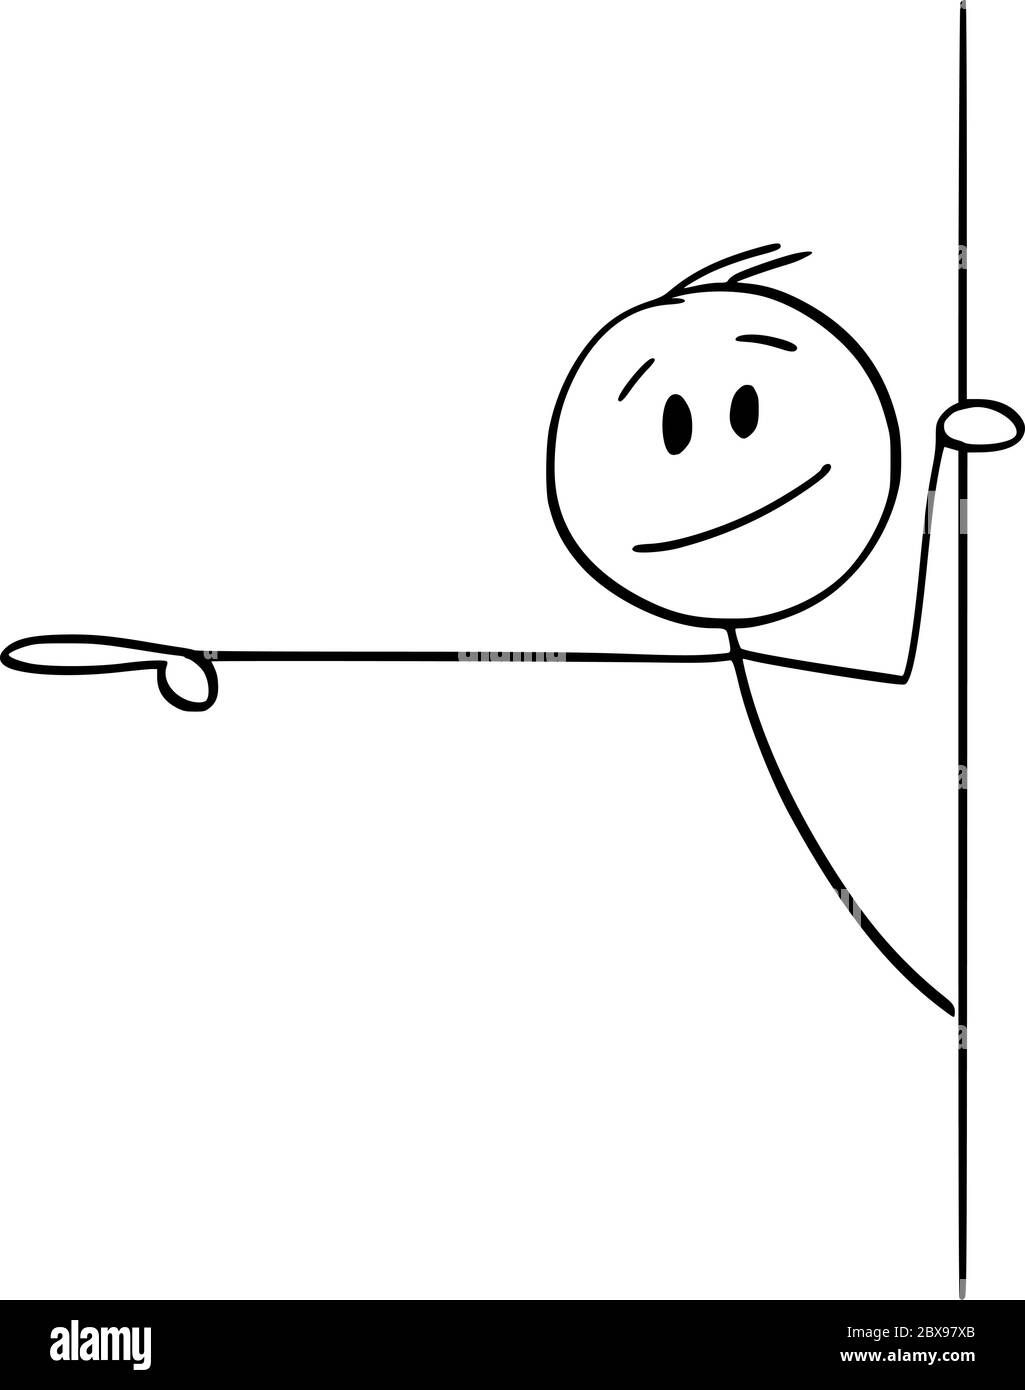 Grafico vettoriale del cartoon disegno illustrazione concettuale di uomo o uomo d'affari che si sbirciano fuori da dietro il muro e che mostrano o puntano il dito verso qualcosa. Illustrazione Vettoriale